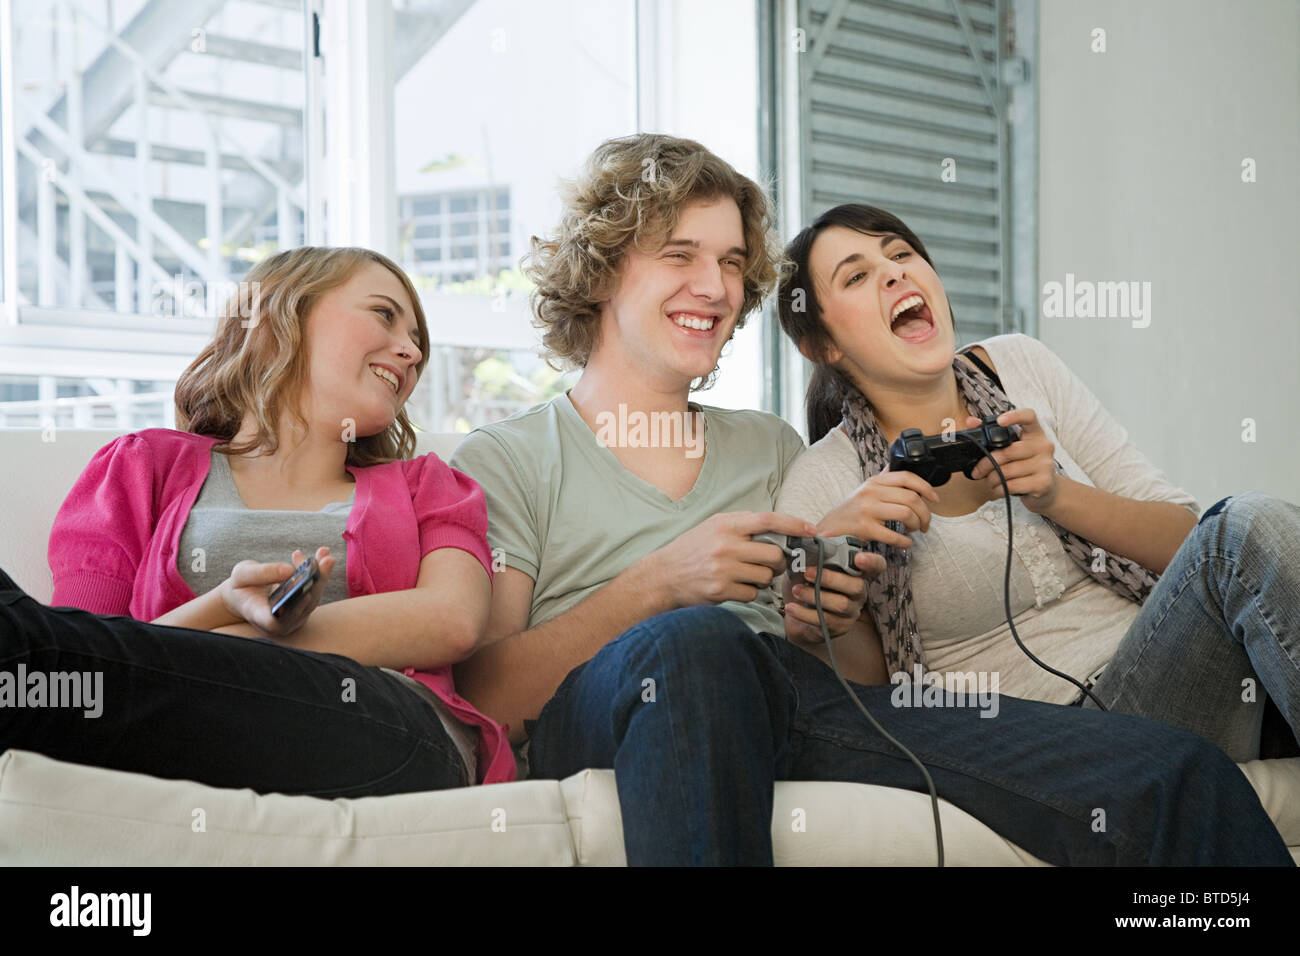 Jugendliche spielen auf Spiele-Konsole Stockfoto